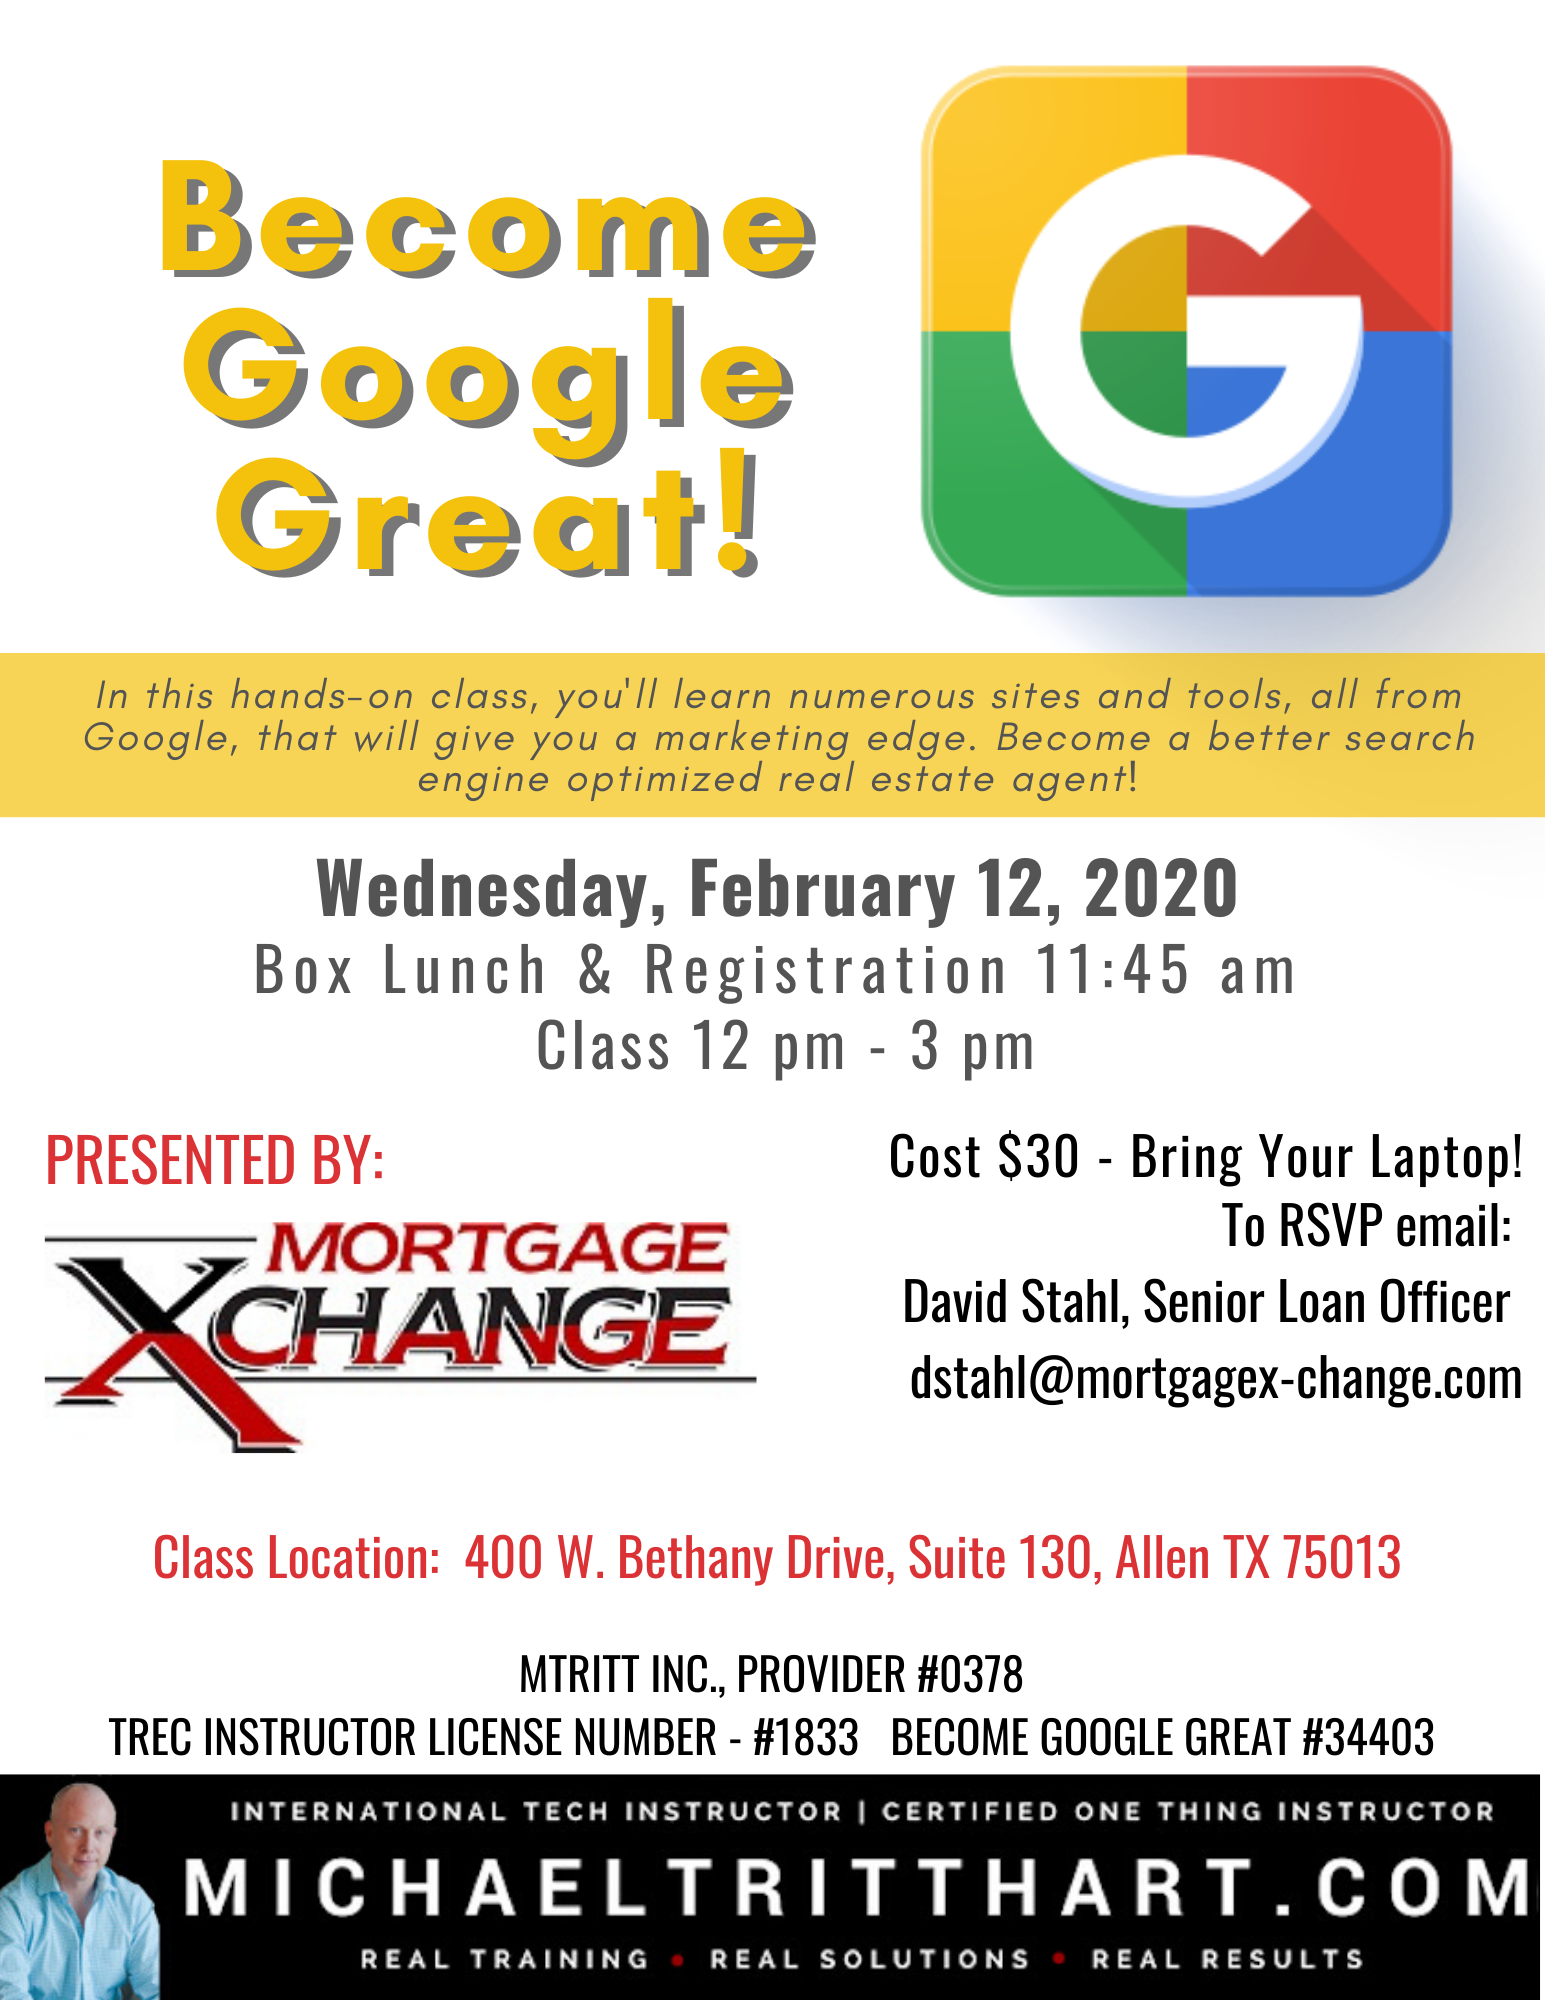 02.12.20 Mortgage XChange - Google Great